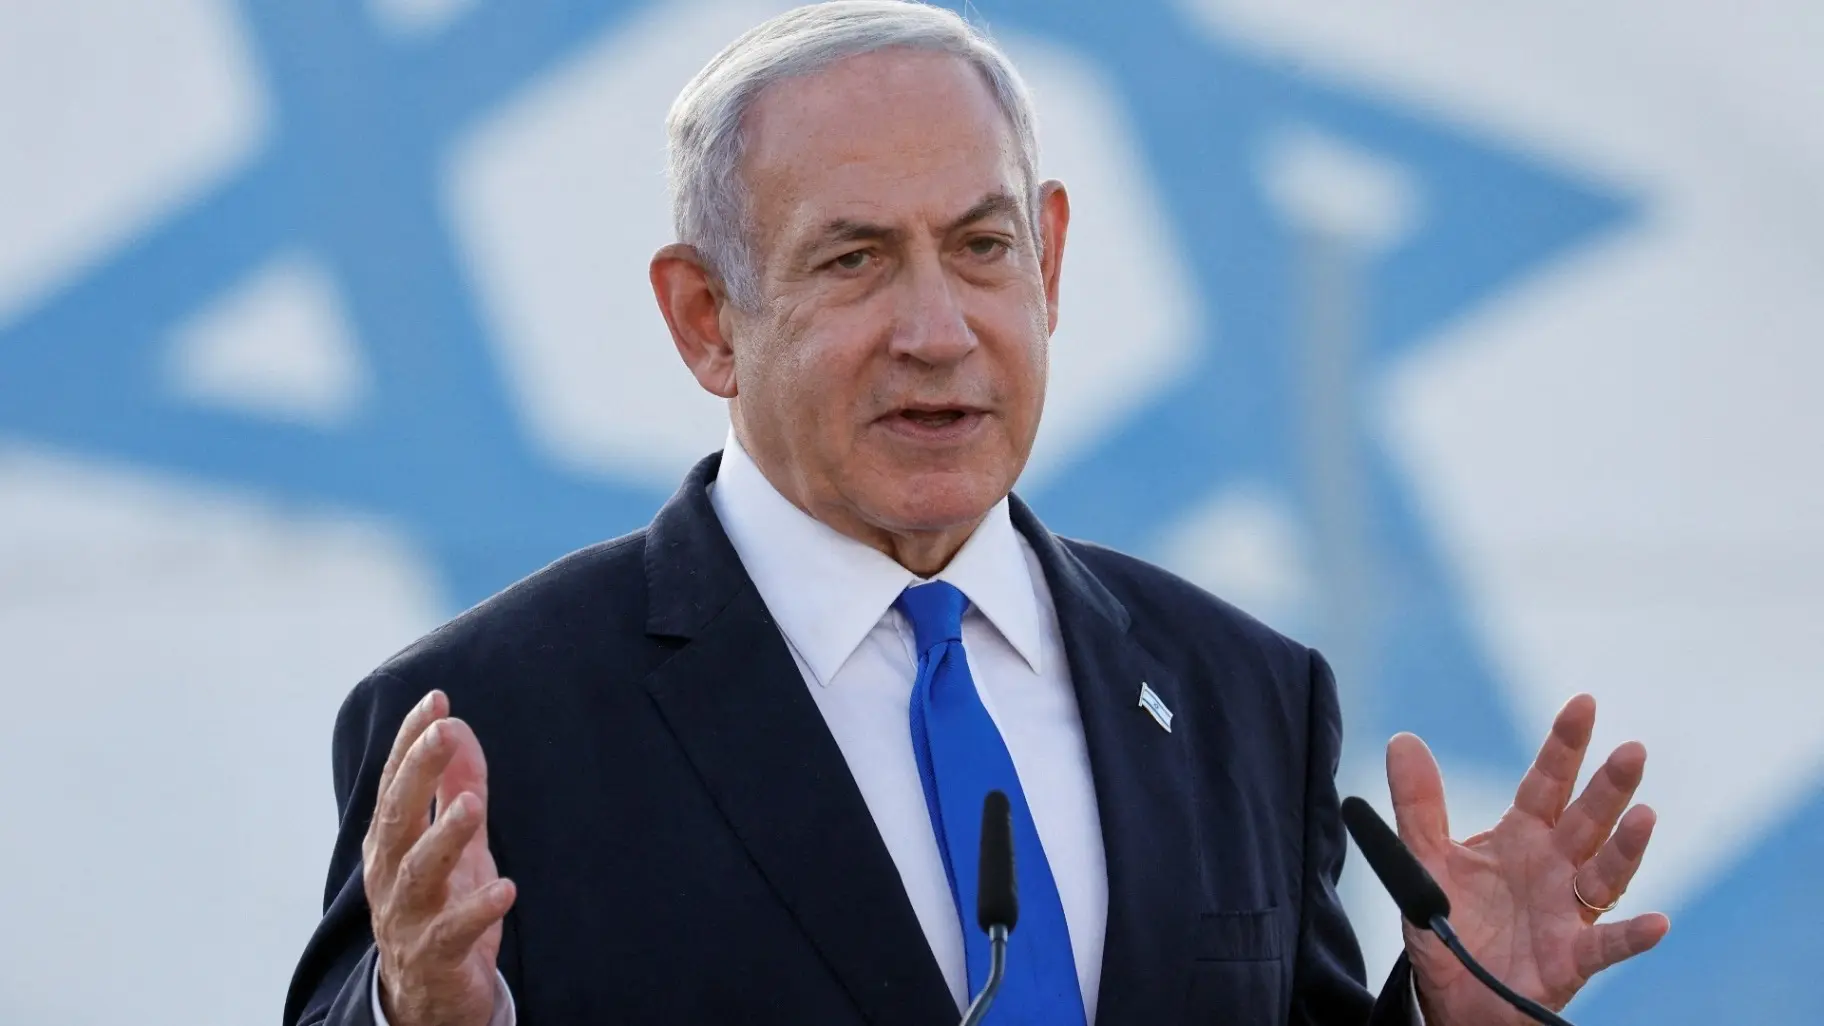 نتانياهو: إسرائيل لن توقف العمليات في غزة حتى يتم تدمير "حماس"